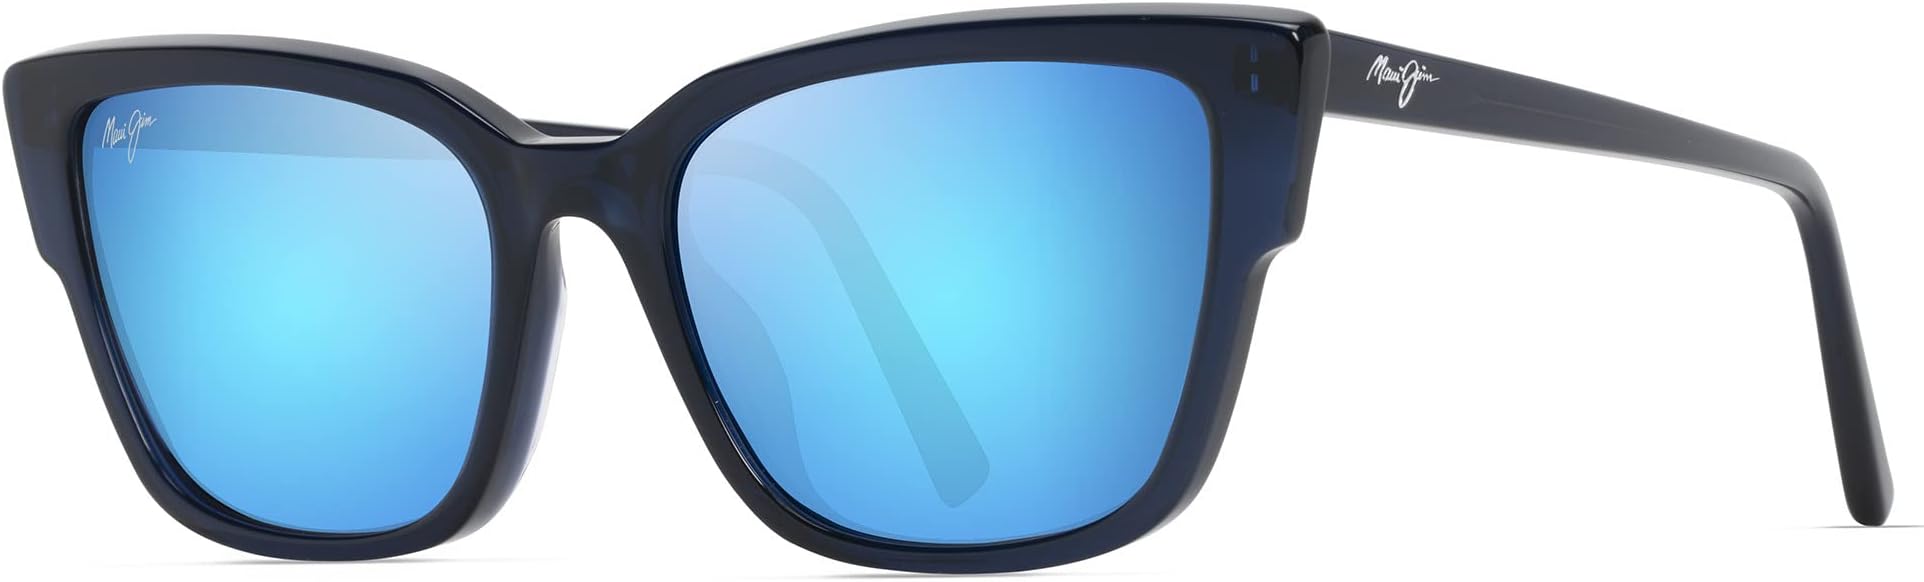 Солнцезащитные очки Kou Maui Jim, цвет Navy Blue/Blue Hawaii солнцезащитные очки kou maui jim цвет navy blue blue hawaii